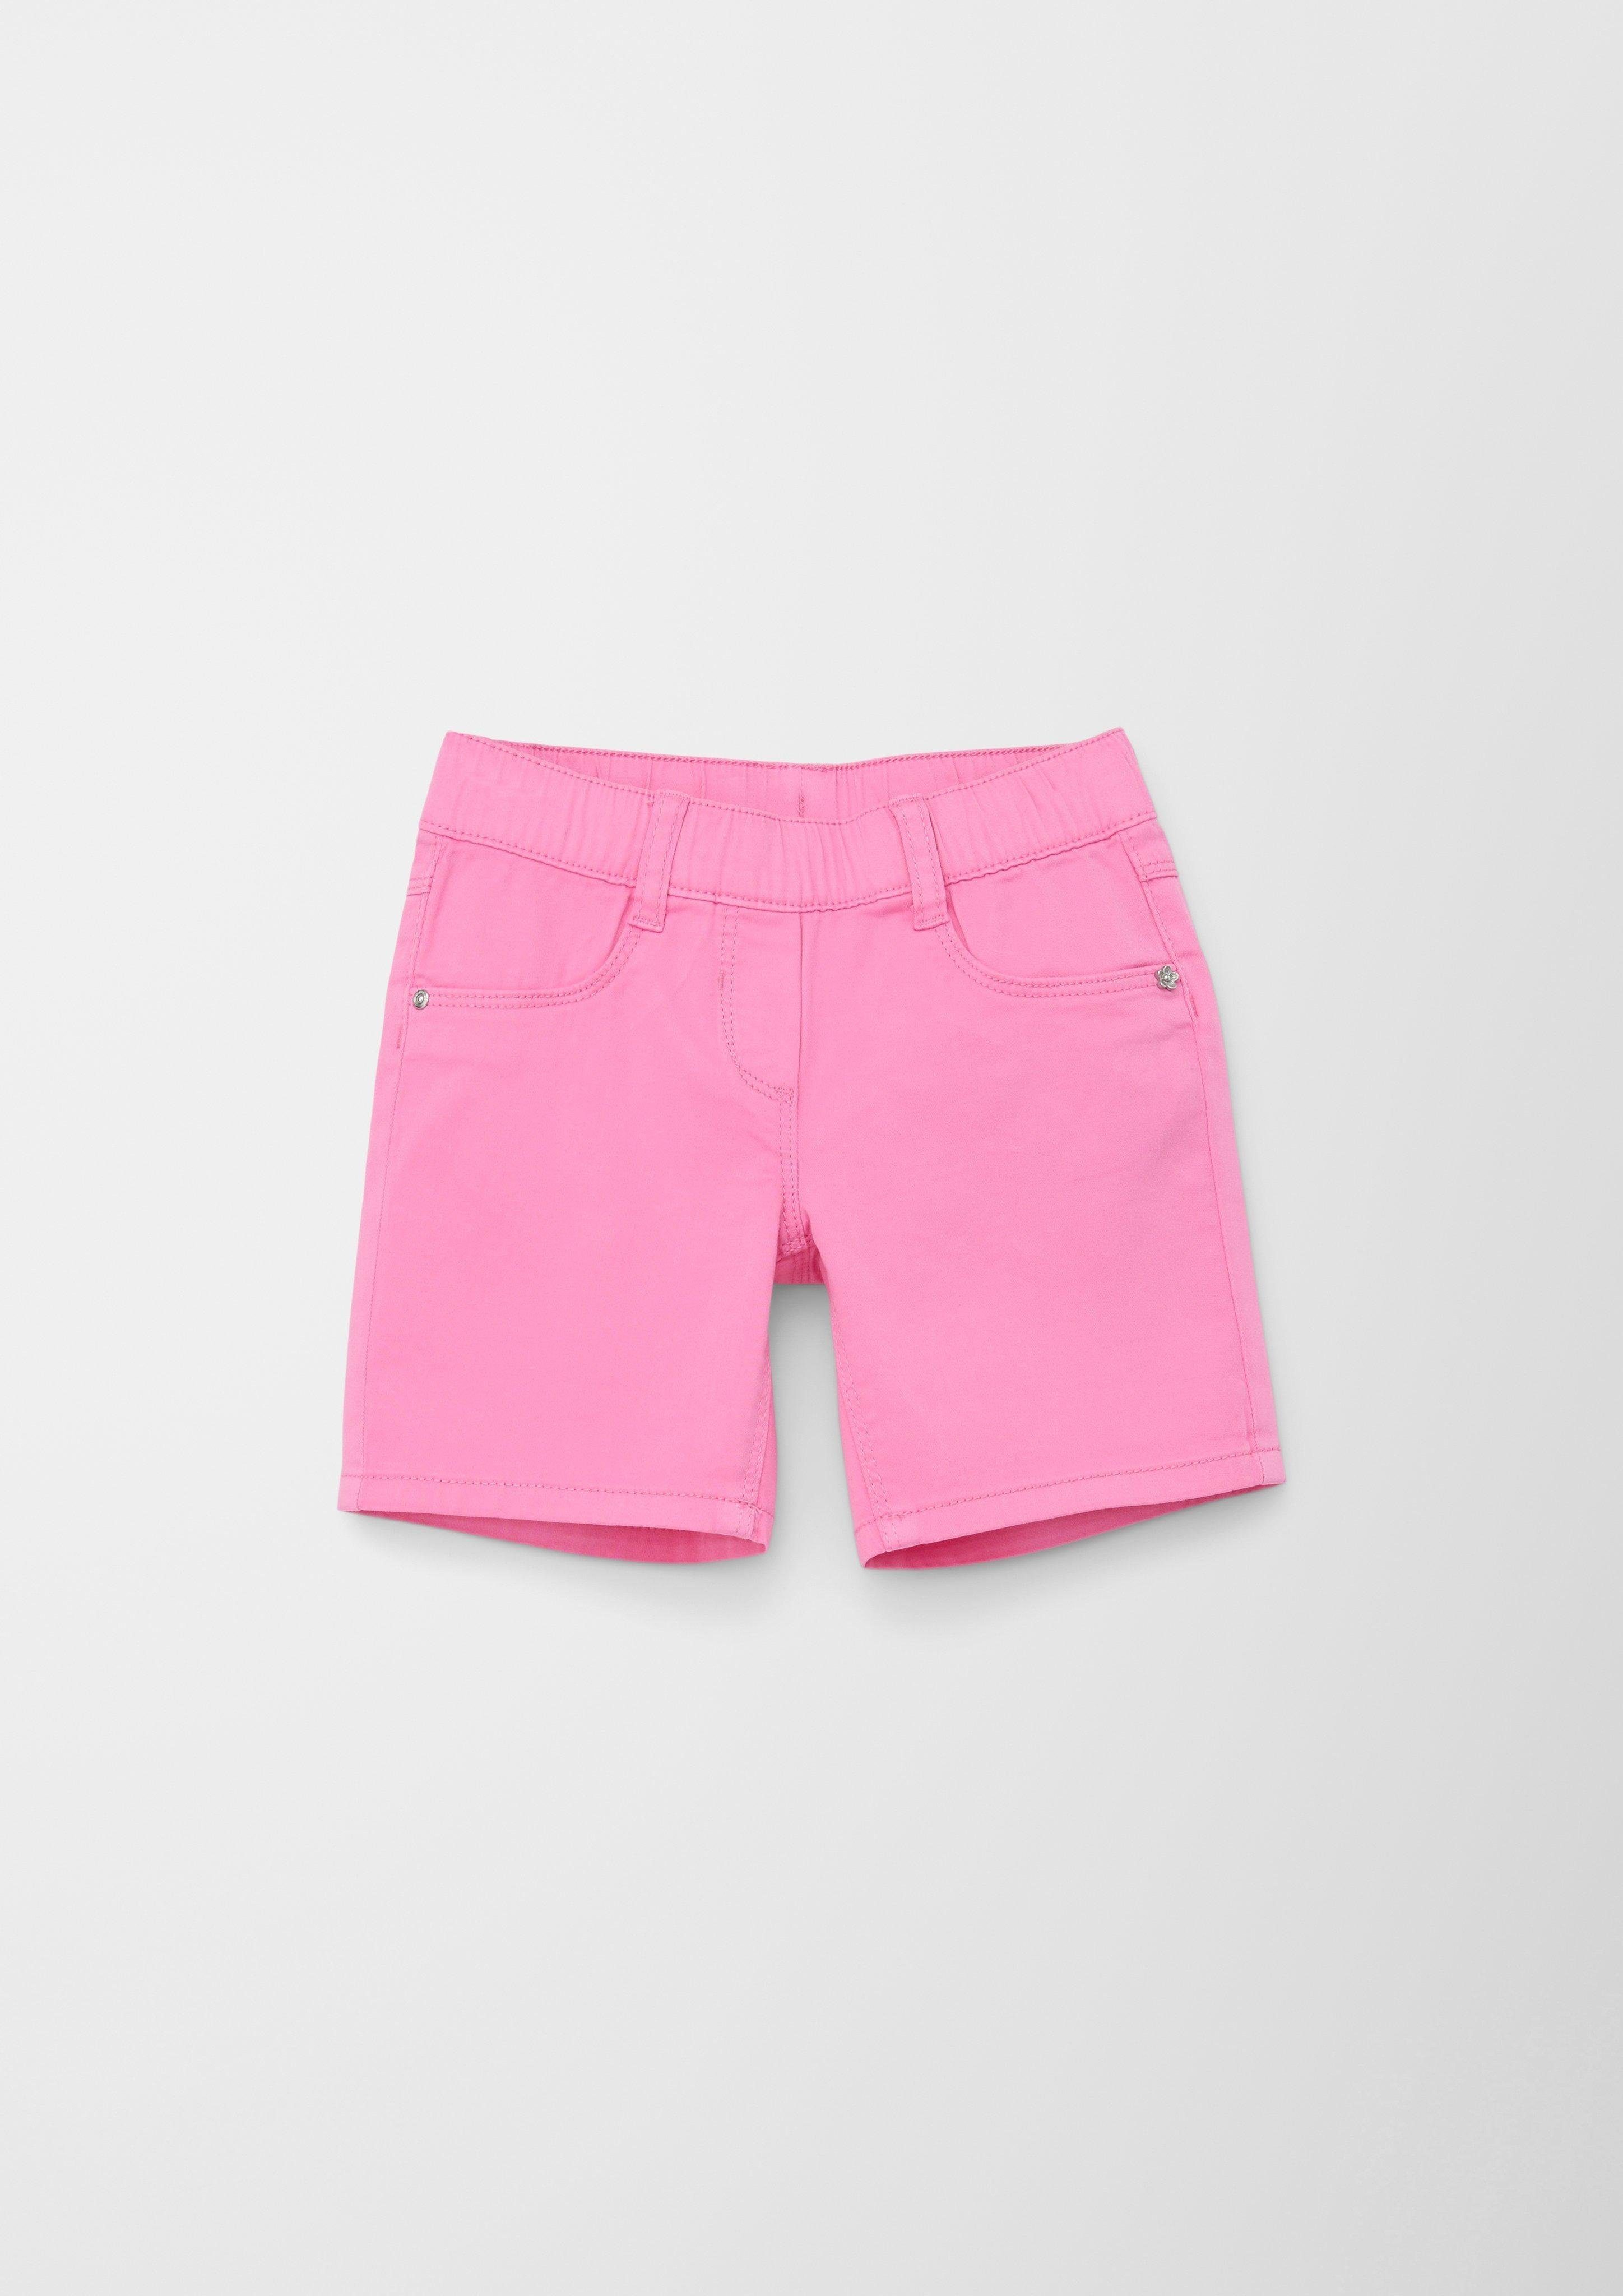 s.Oliver Hose & Shorts Regular: Short mit Elastikbund Stickerei pink